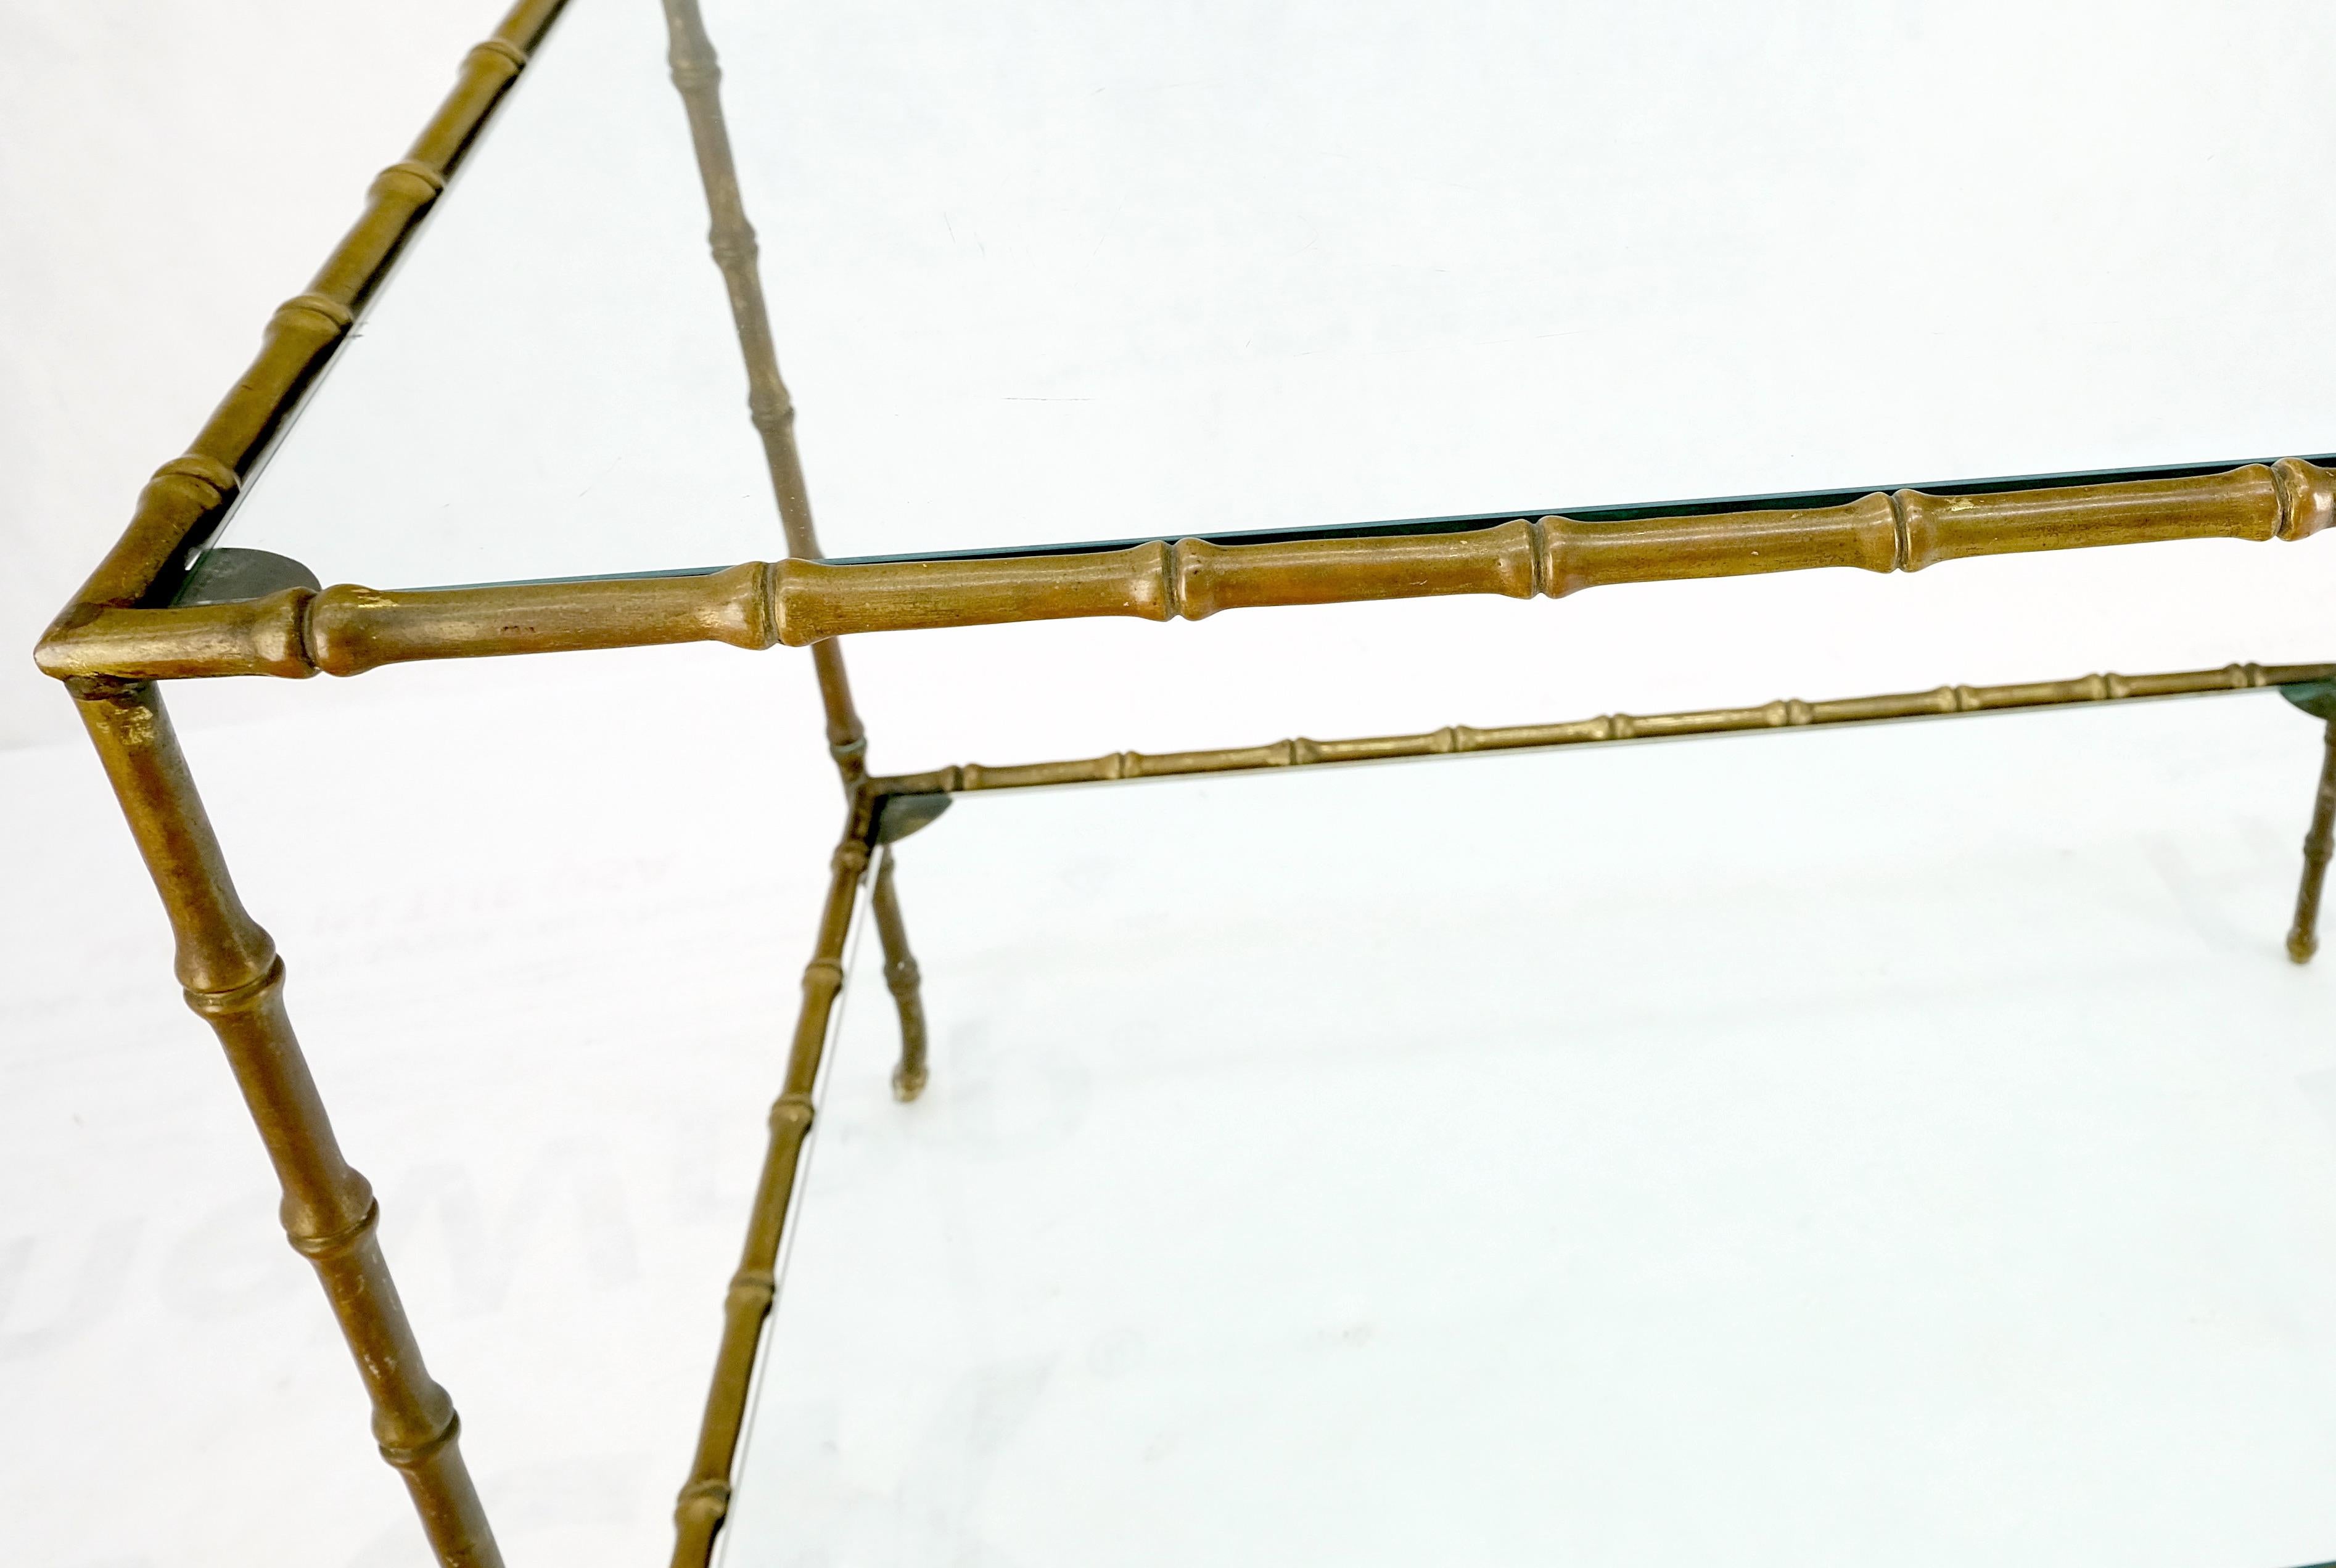 Table basse occasionnelle en bronze massif à deux niveaux avec dessus en verre en faux bambou.